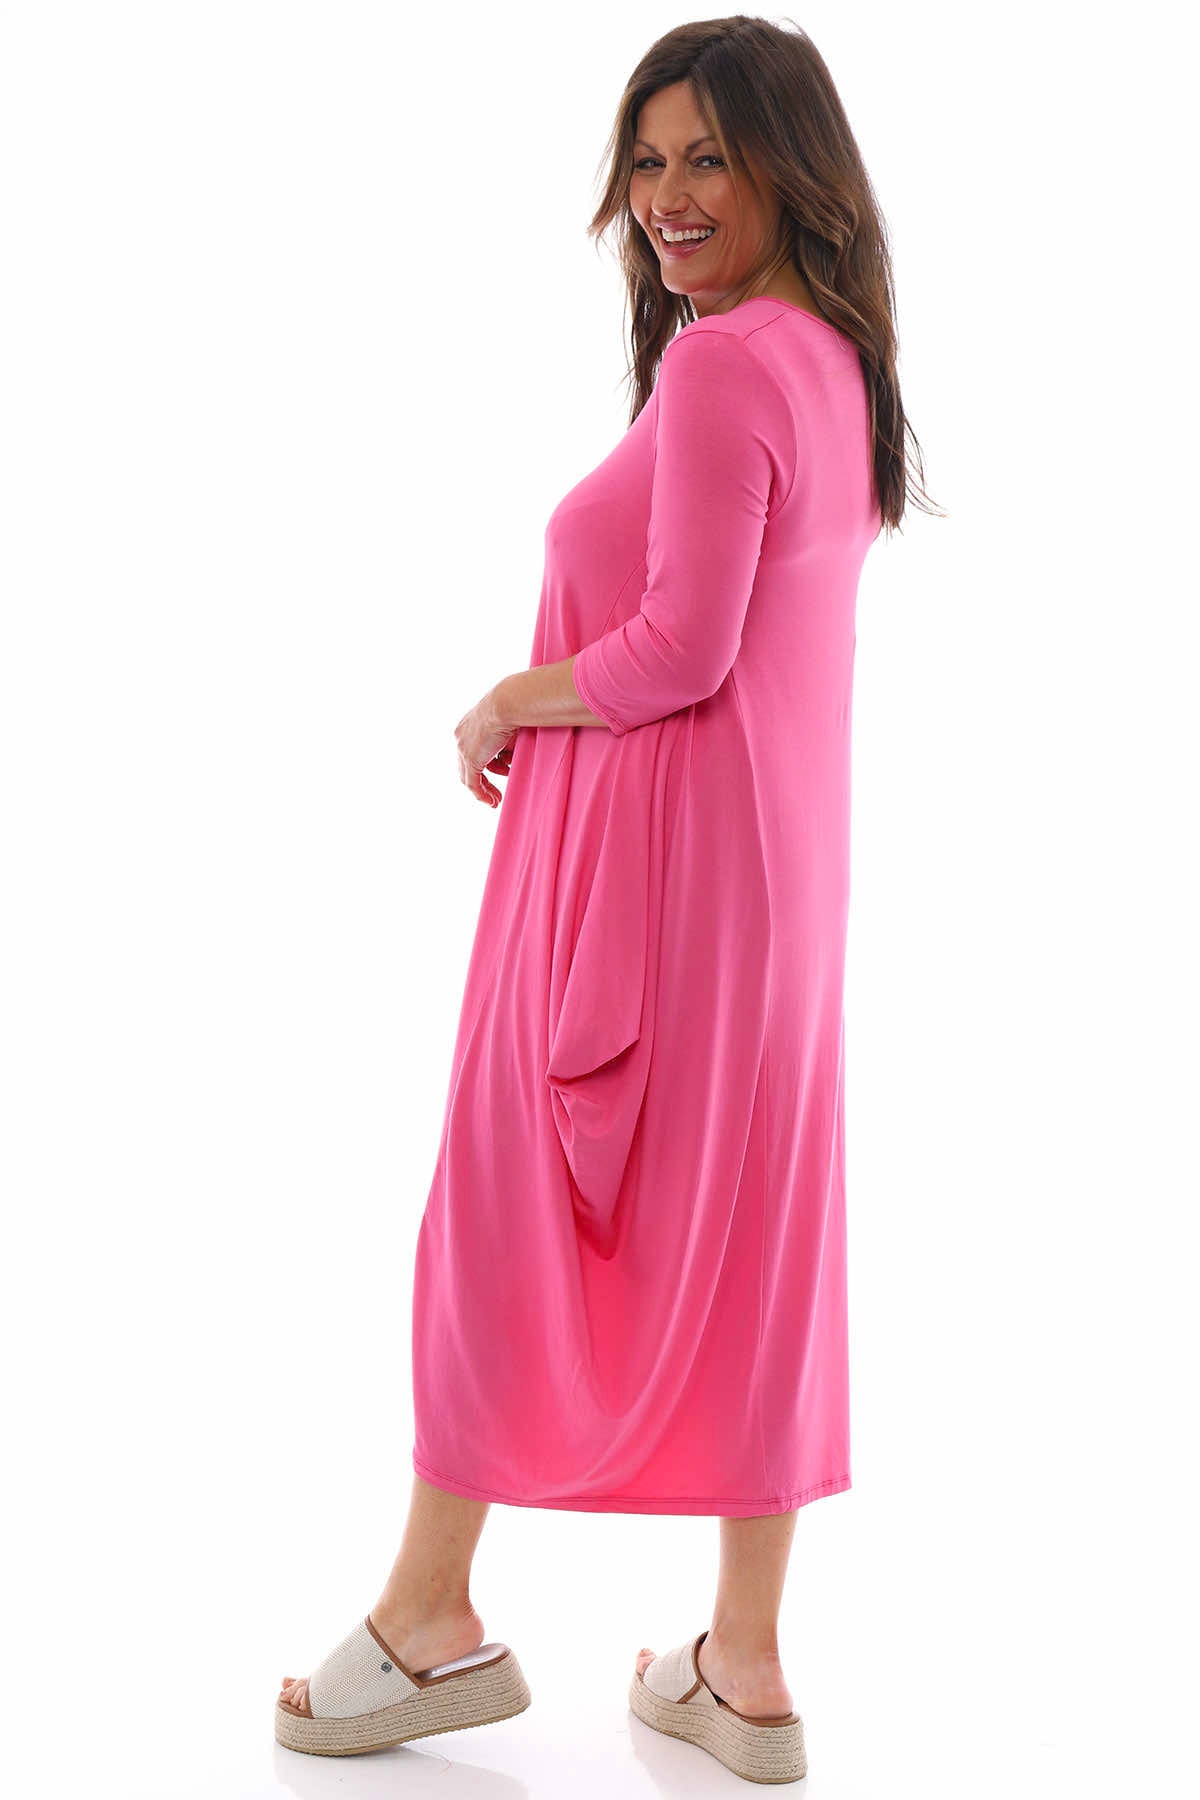 Boswin Dress Bubblegum Pink